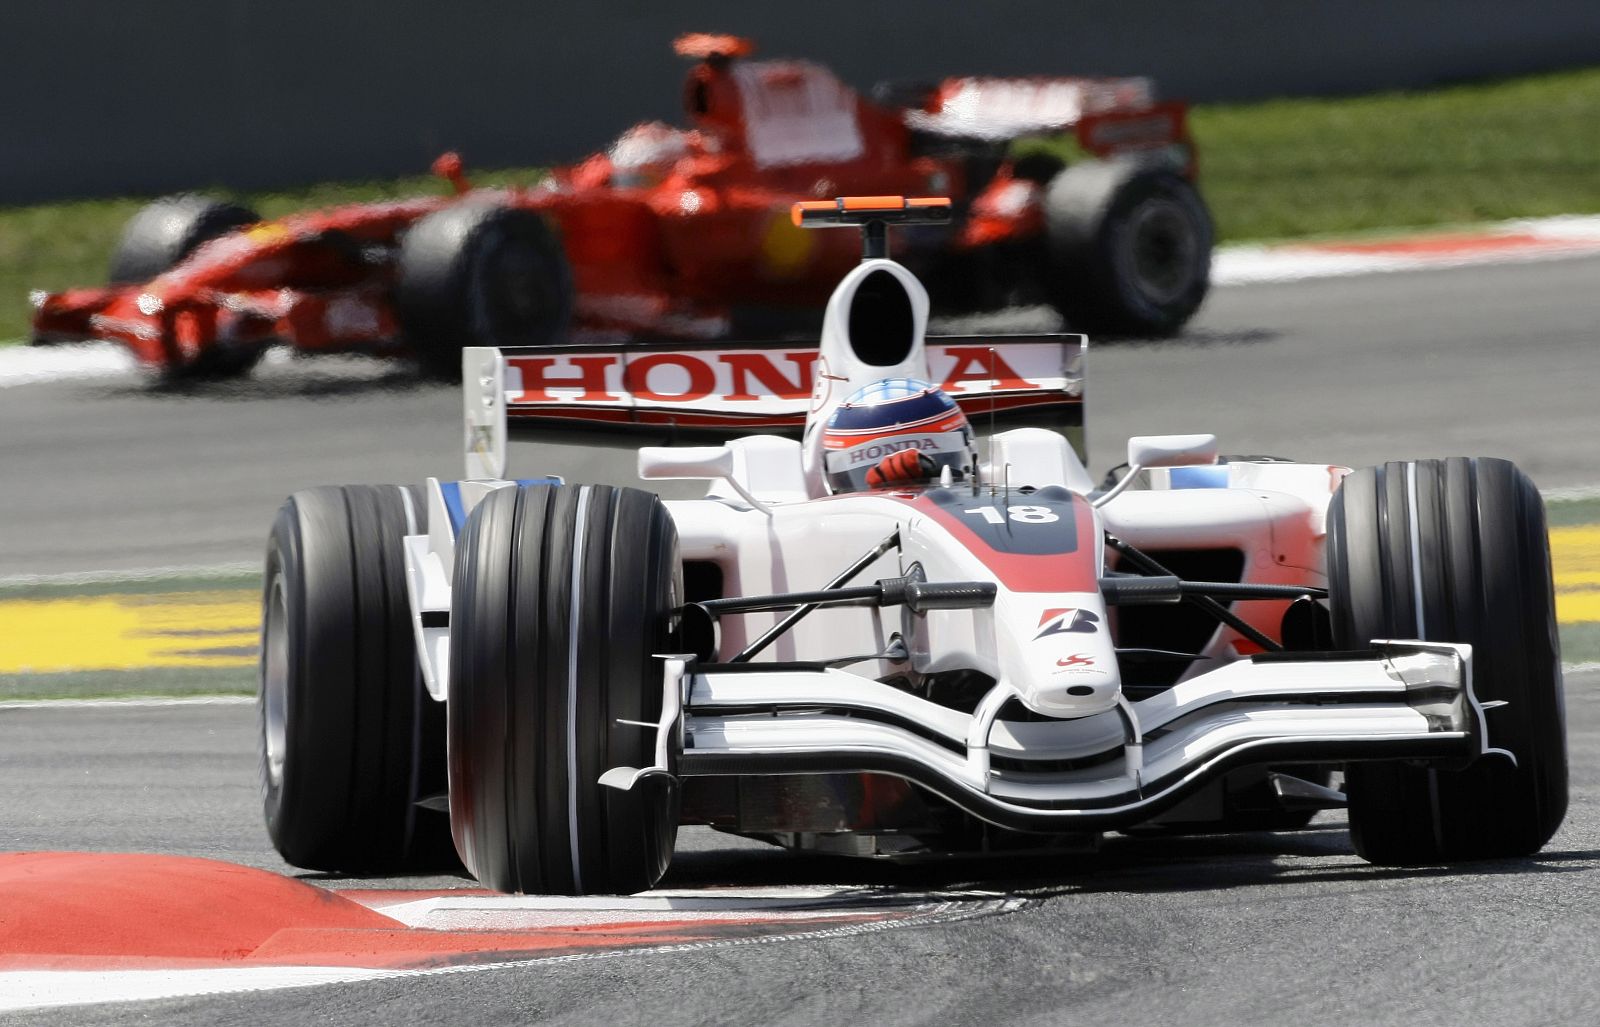 El piloto japonés de Super Aguri, Takuma Sato, toma una curva durante la segunda sesión de entrenamientos libres del GP de España en Montmeló el 25 de abril de 2008.